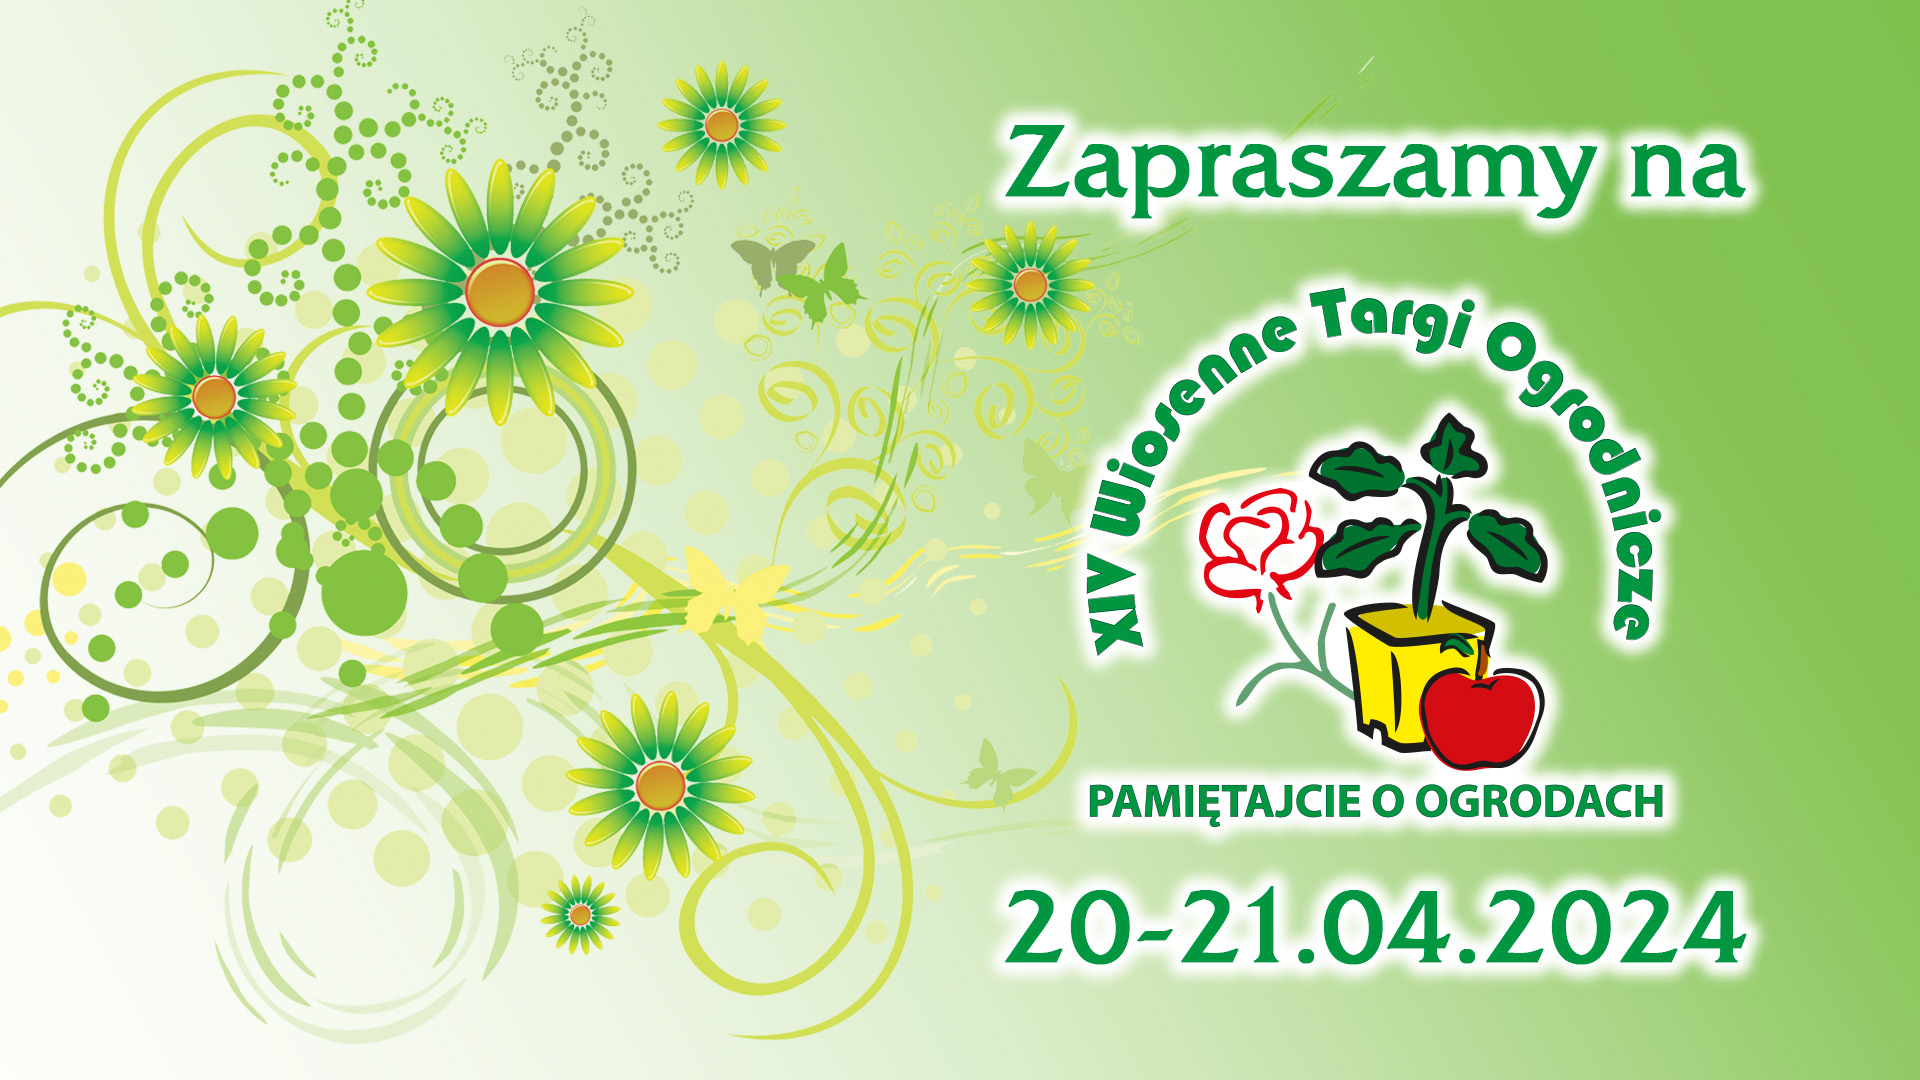 XIV Wiosenne Targi Ogrodnicze w Olsztynie 20-21 kwietnia 2024 r.